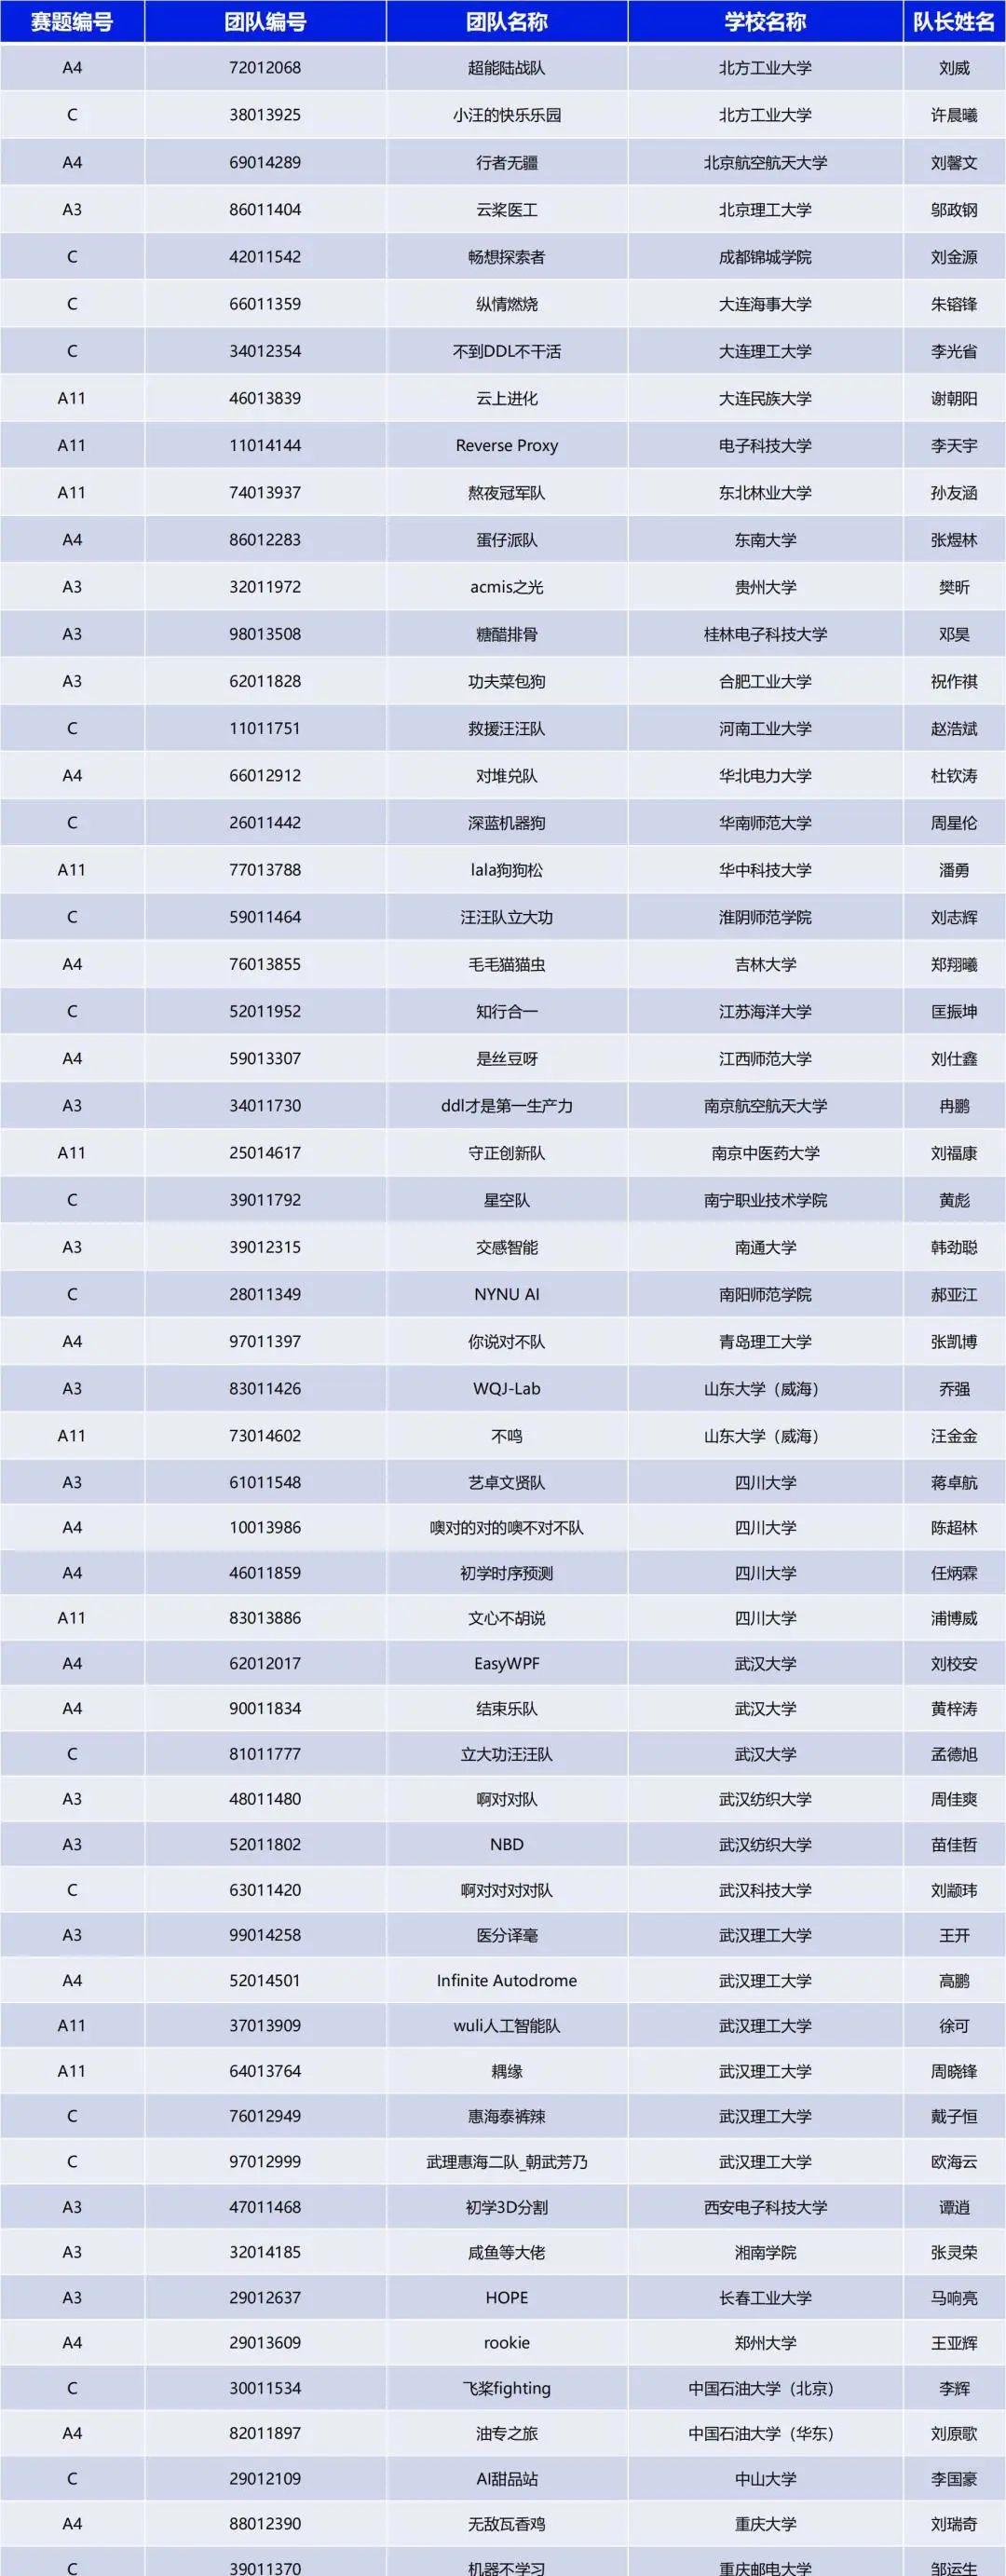 “中国软件杯”飞桨赛道晋级决赛现场名单公布